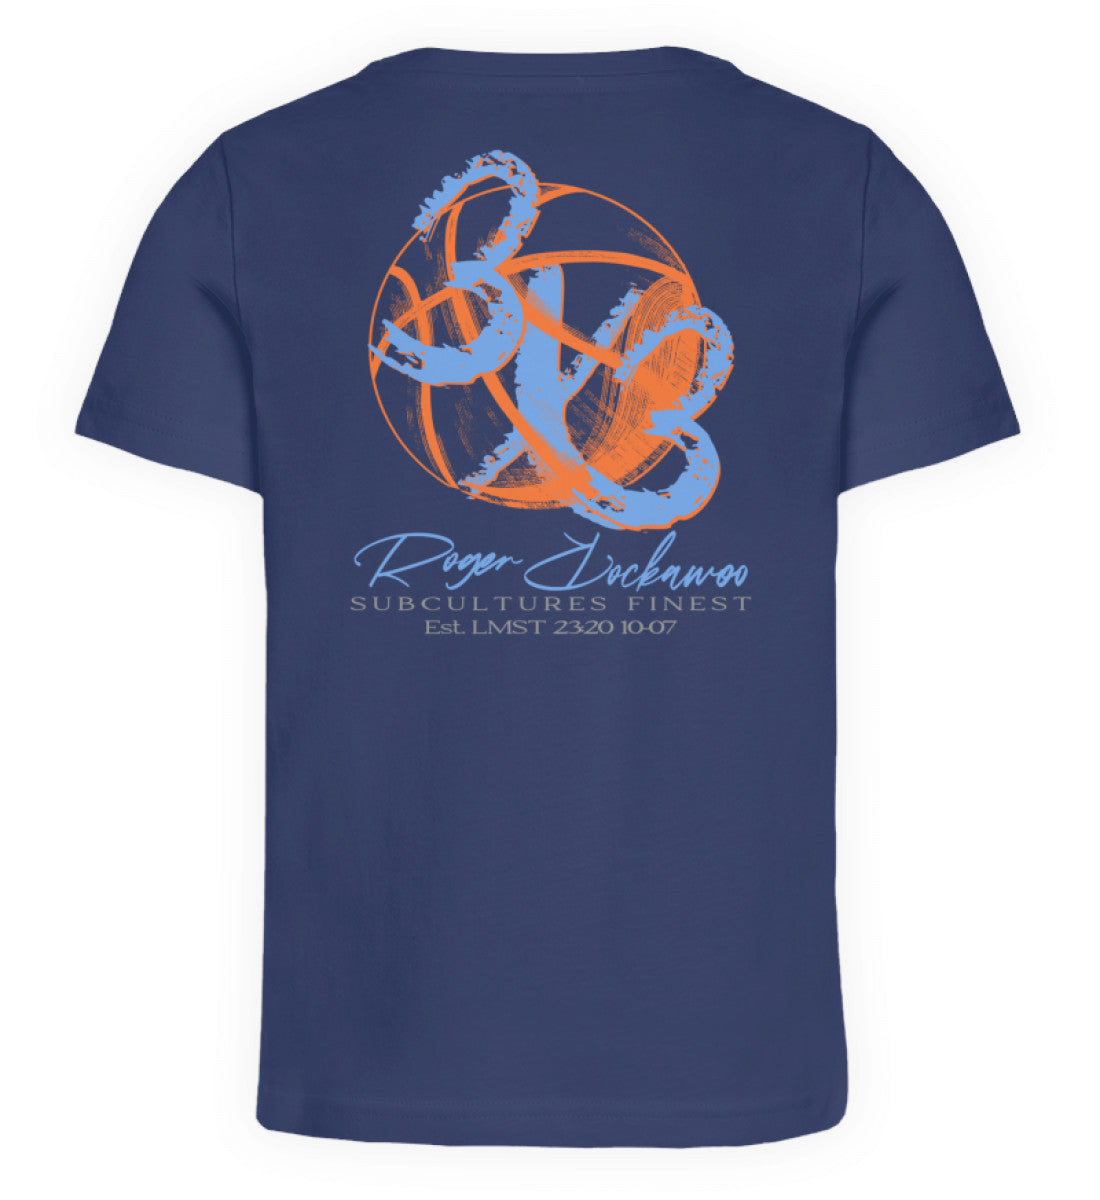 Blaues Kinder T-Shirt für Mädchen und Jungen bedruckt mit dem Design der Roger Rockawoo Kollektion Basketball 3x3 Streetball Check Ball